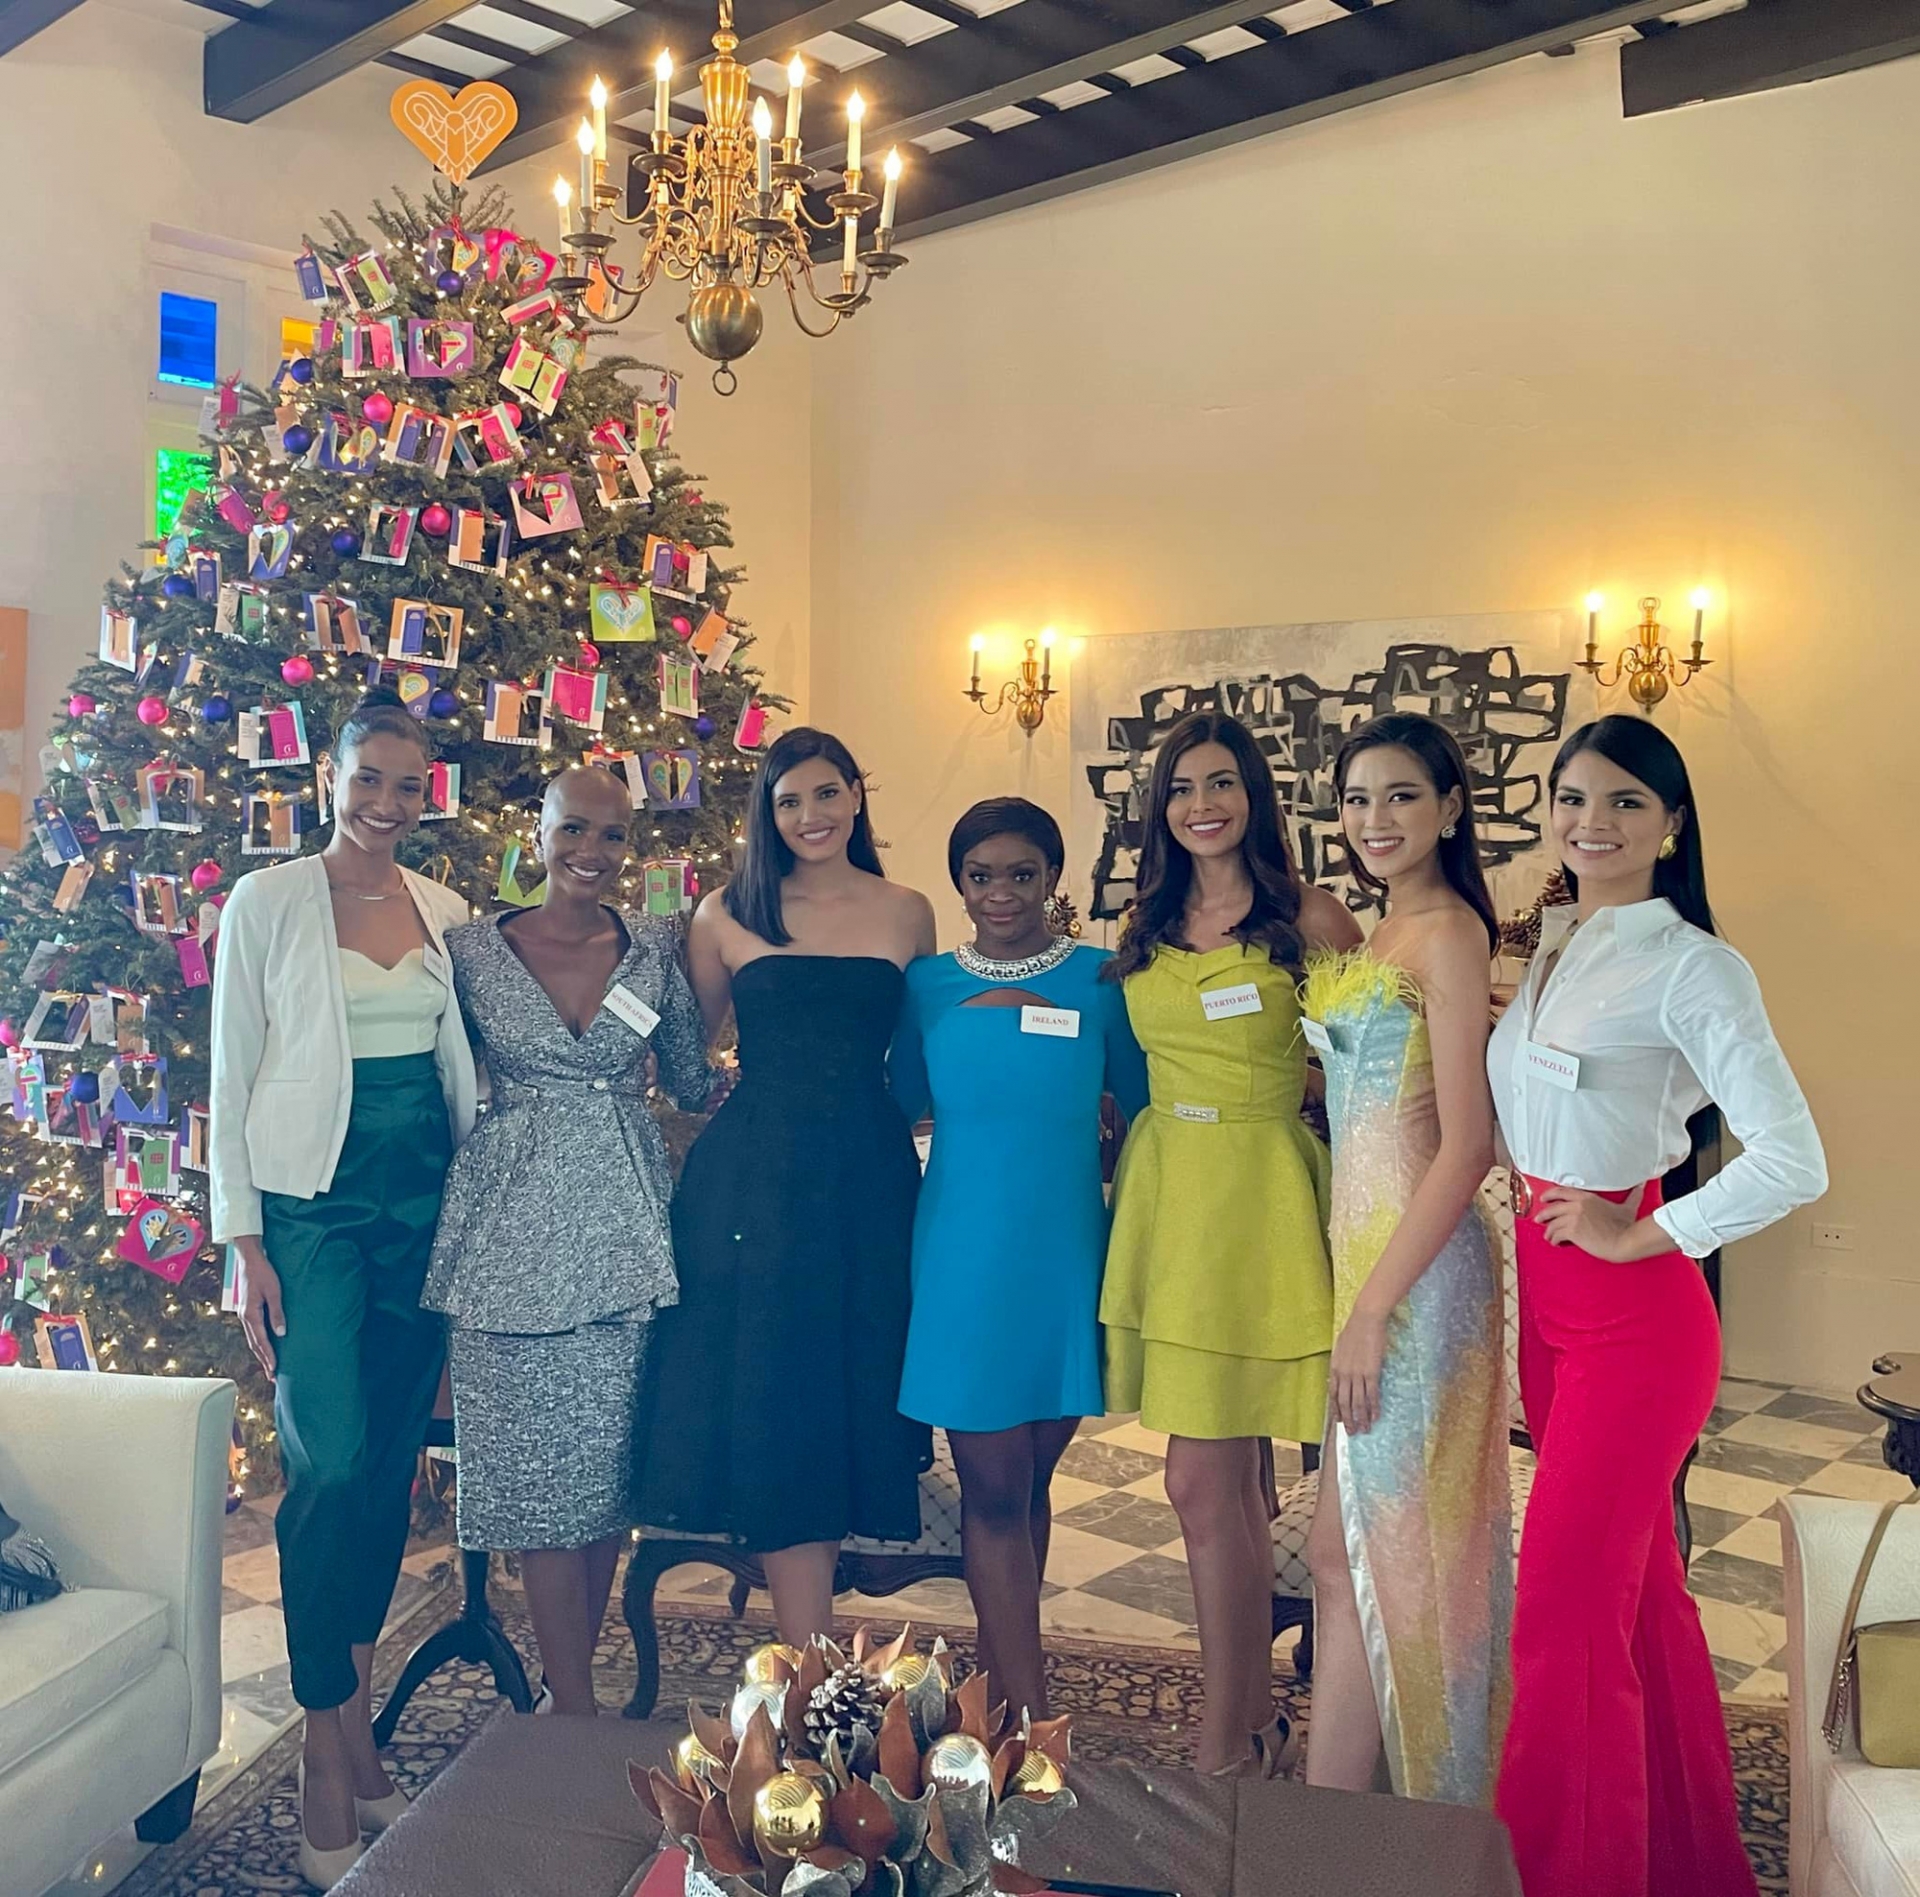 Hoa hậu Đỗ Thị Hà cùng 5 thí sinh khác được vinh dự đến thăm Văn phòng Thống đốc tại Puerto Rico